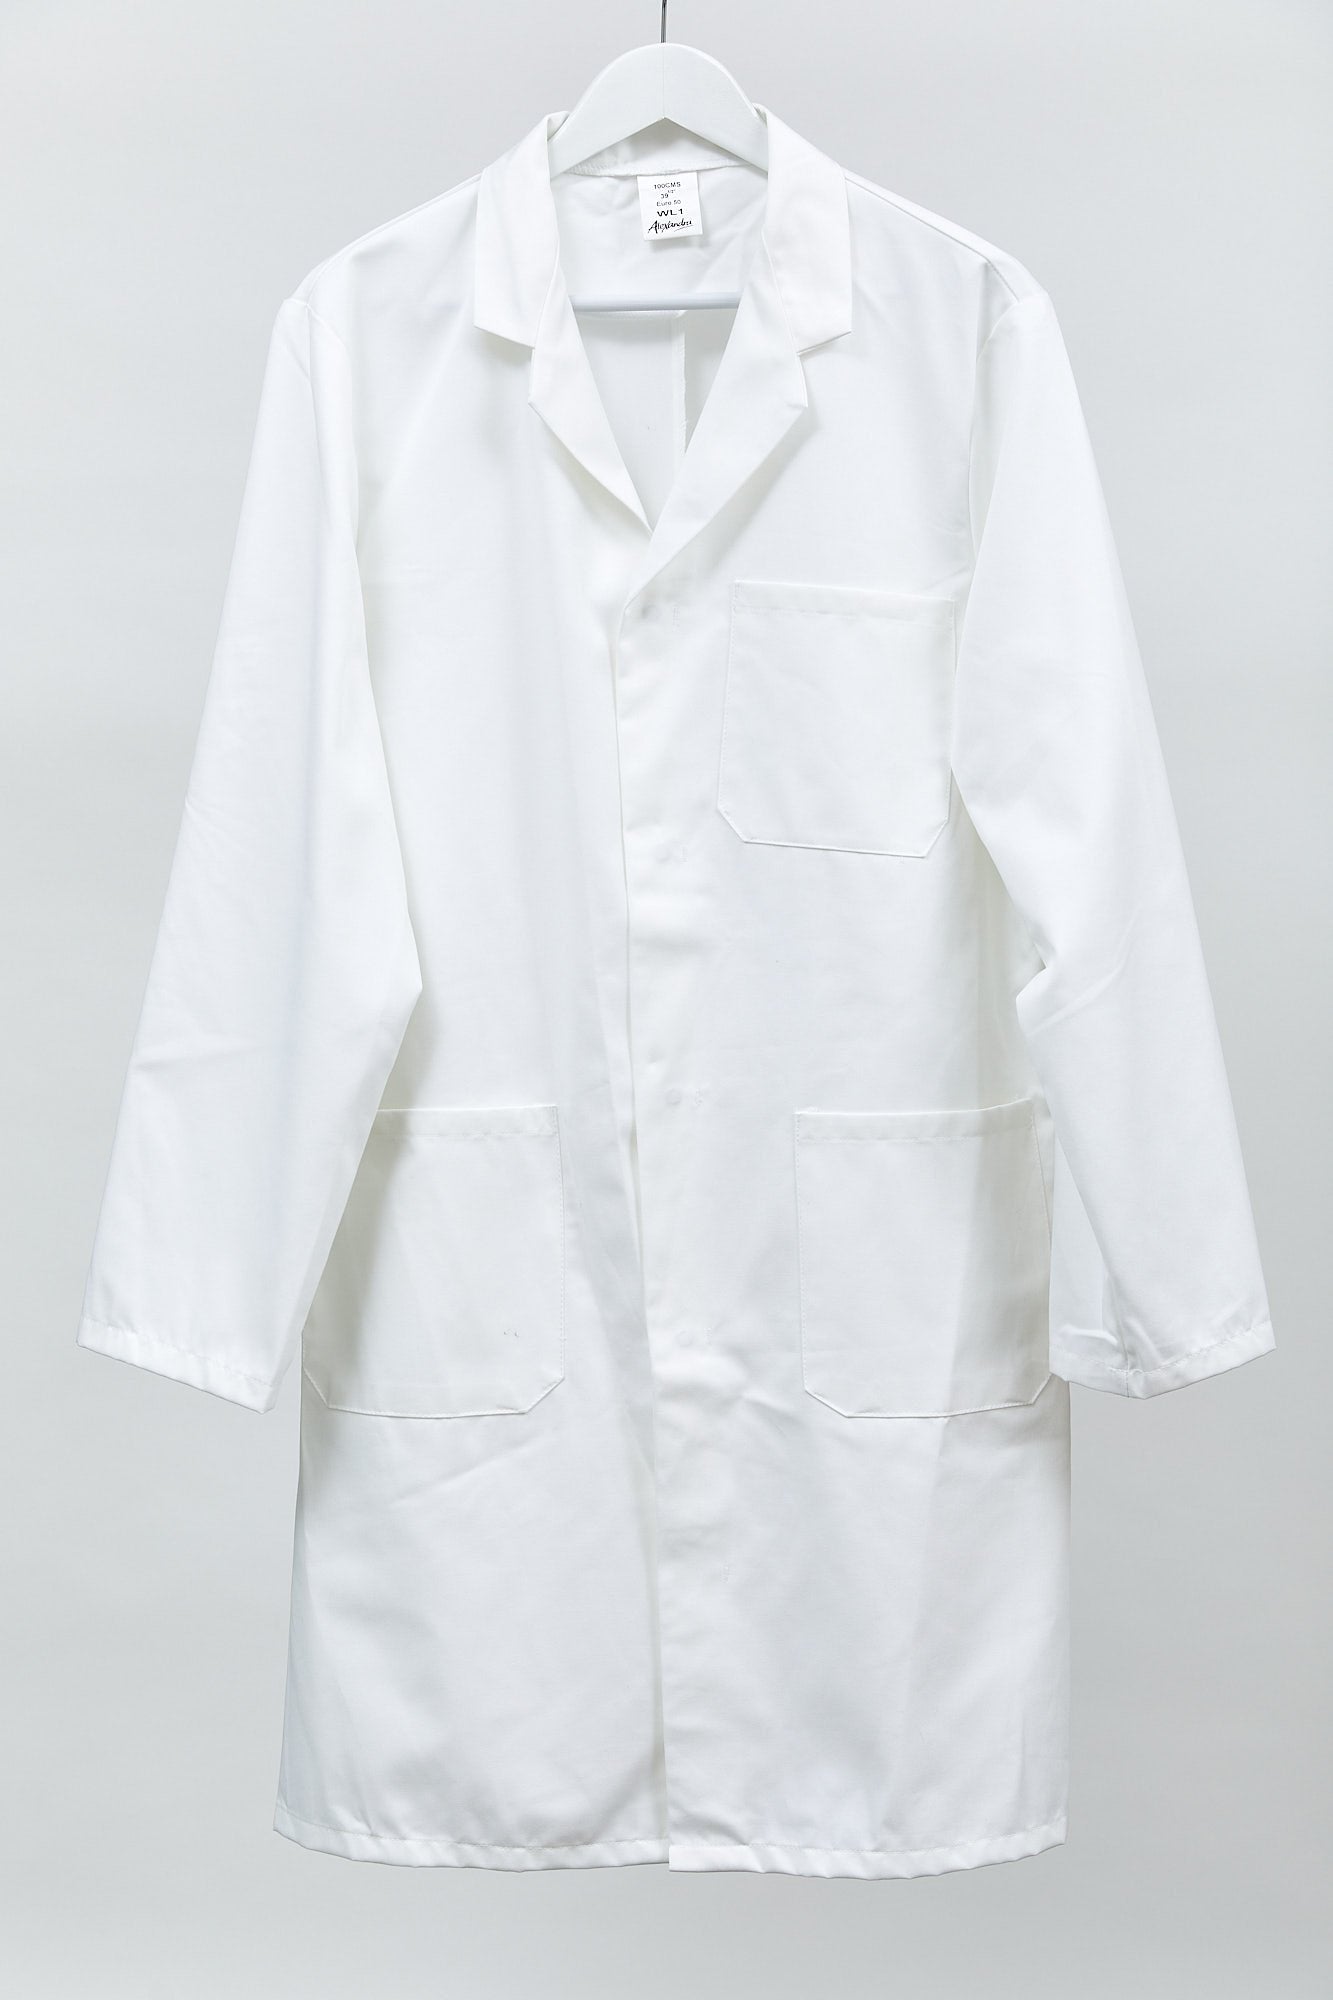 White unisex Lab coat: Size large or 40"